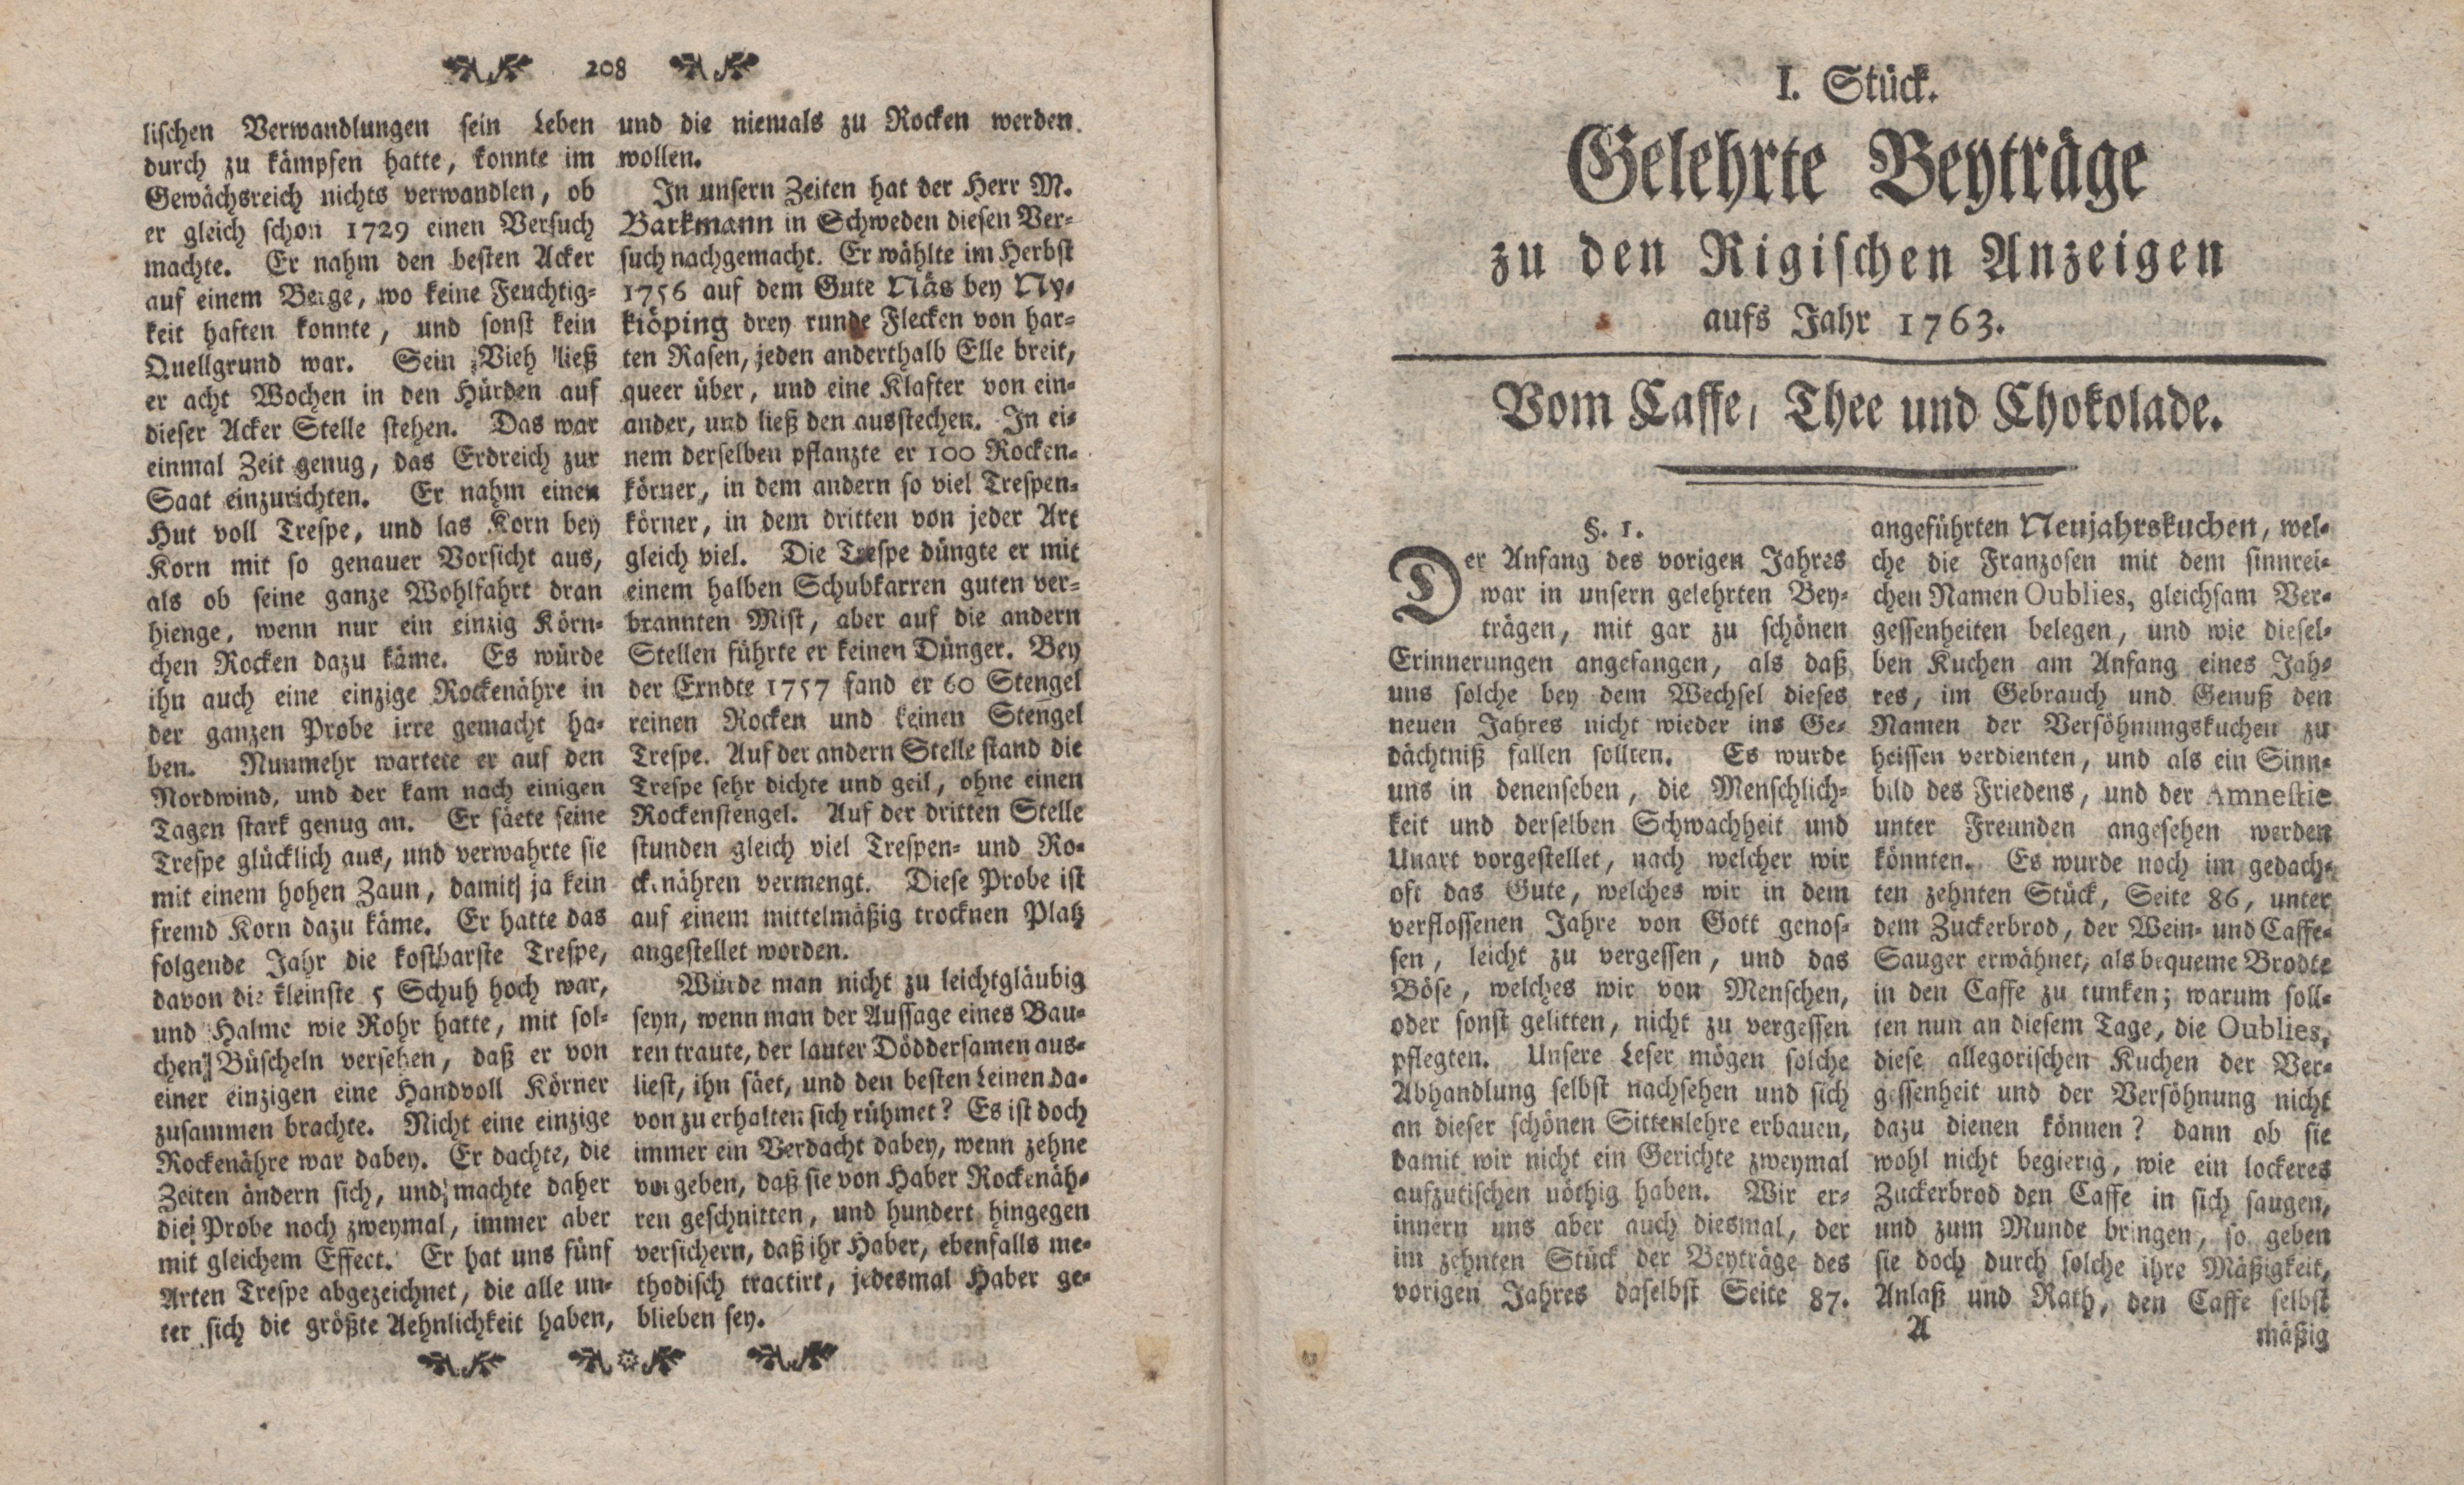 Vom Caffe, Thee und Chokolade [1] (1763) | 1. (1) Title page